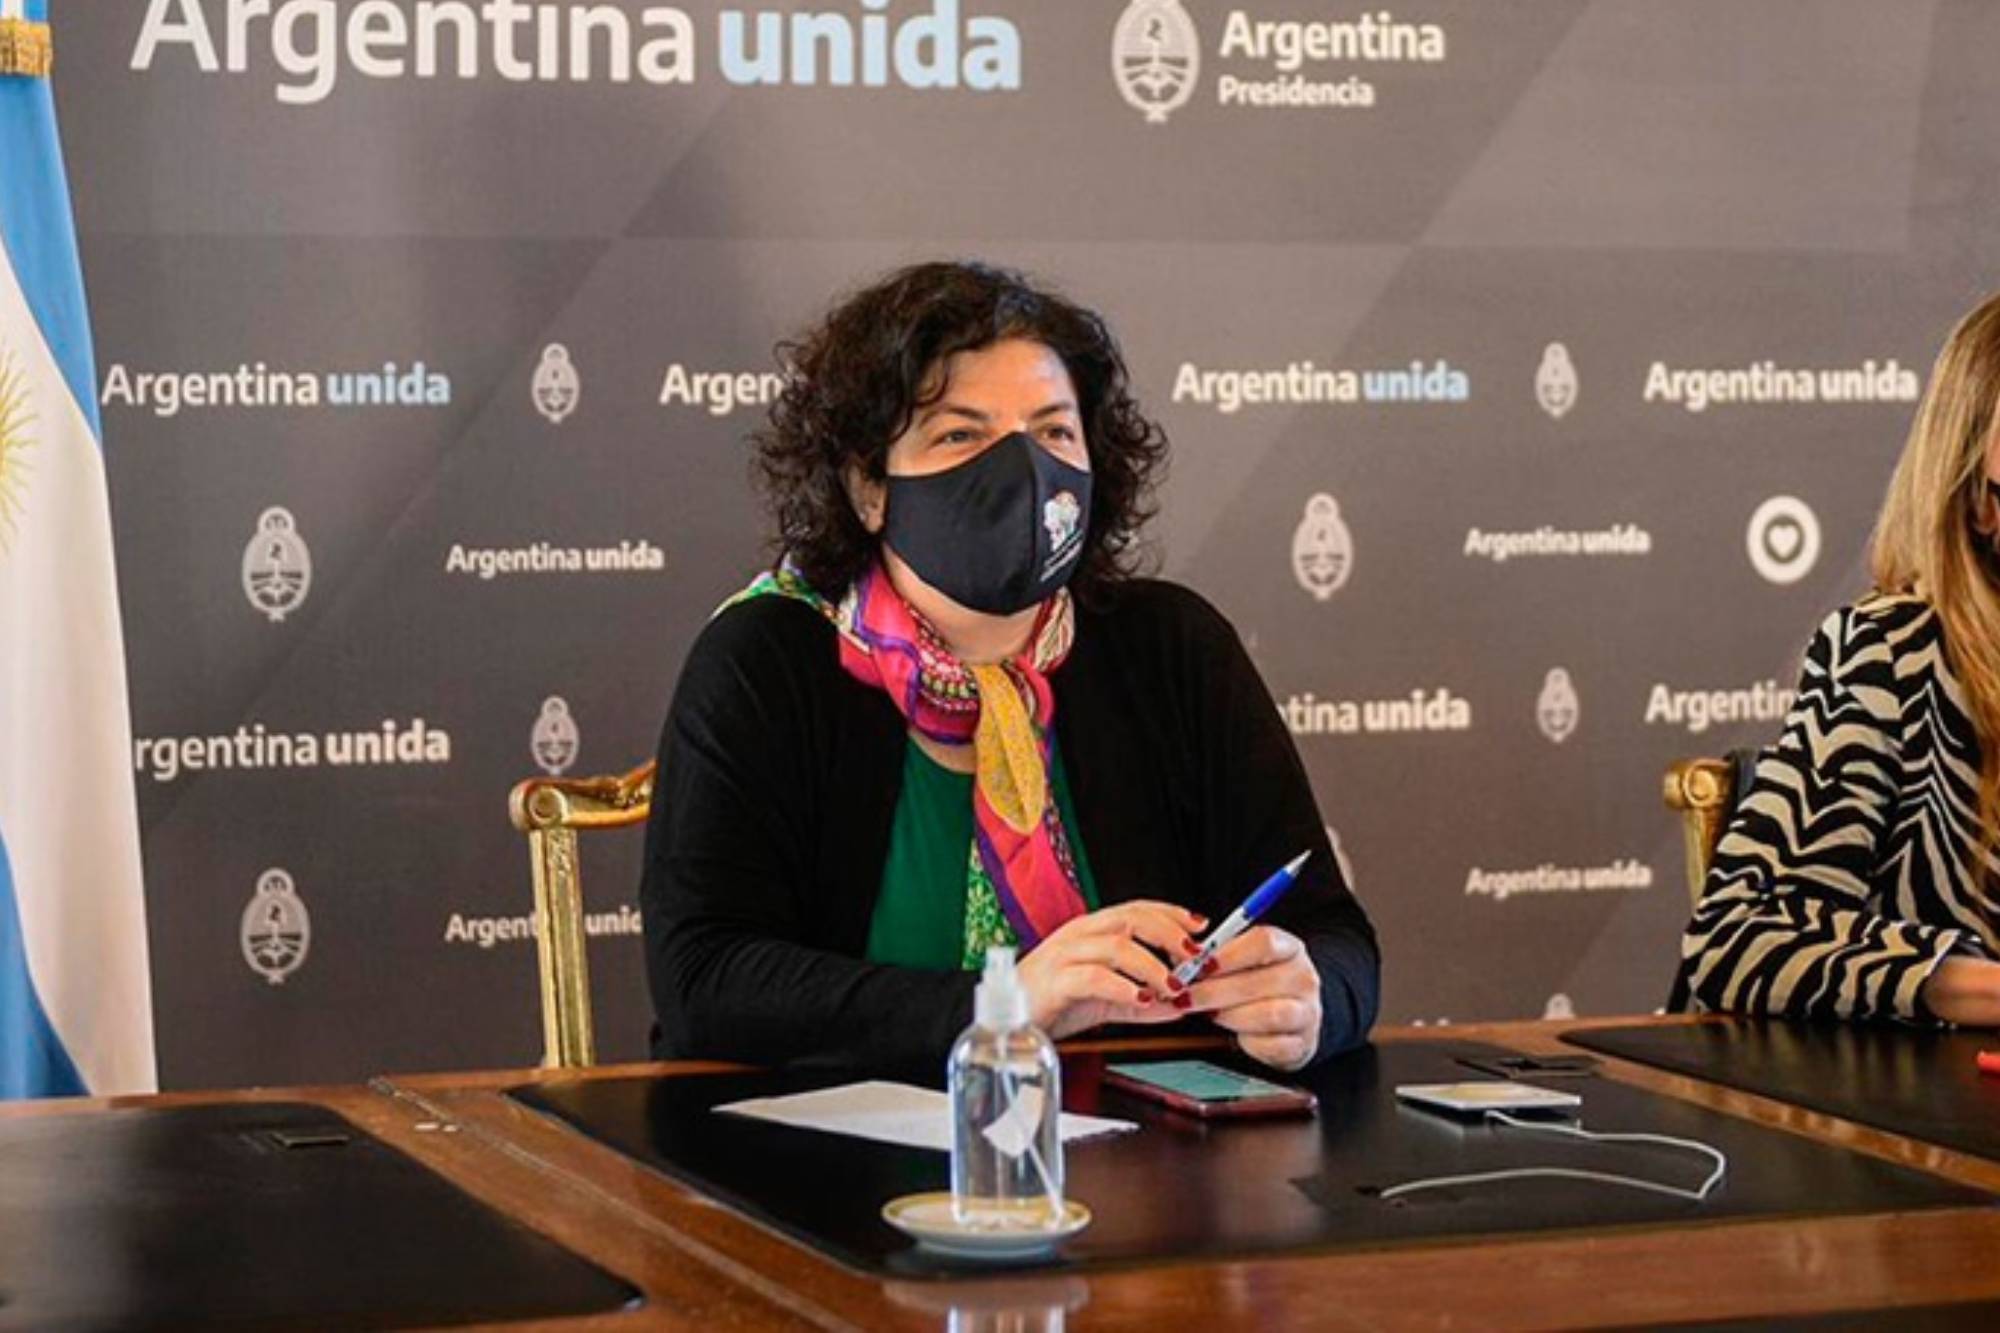 Argentina recibirá casi 5 millones de dosis de AstraZeneca, según Vizzotti